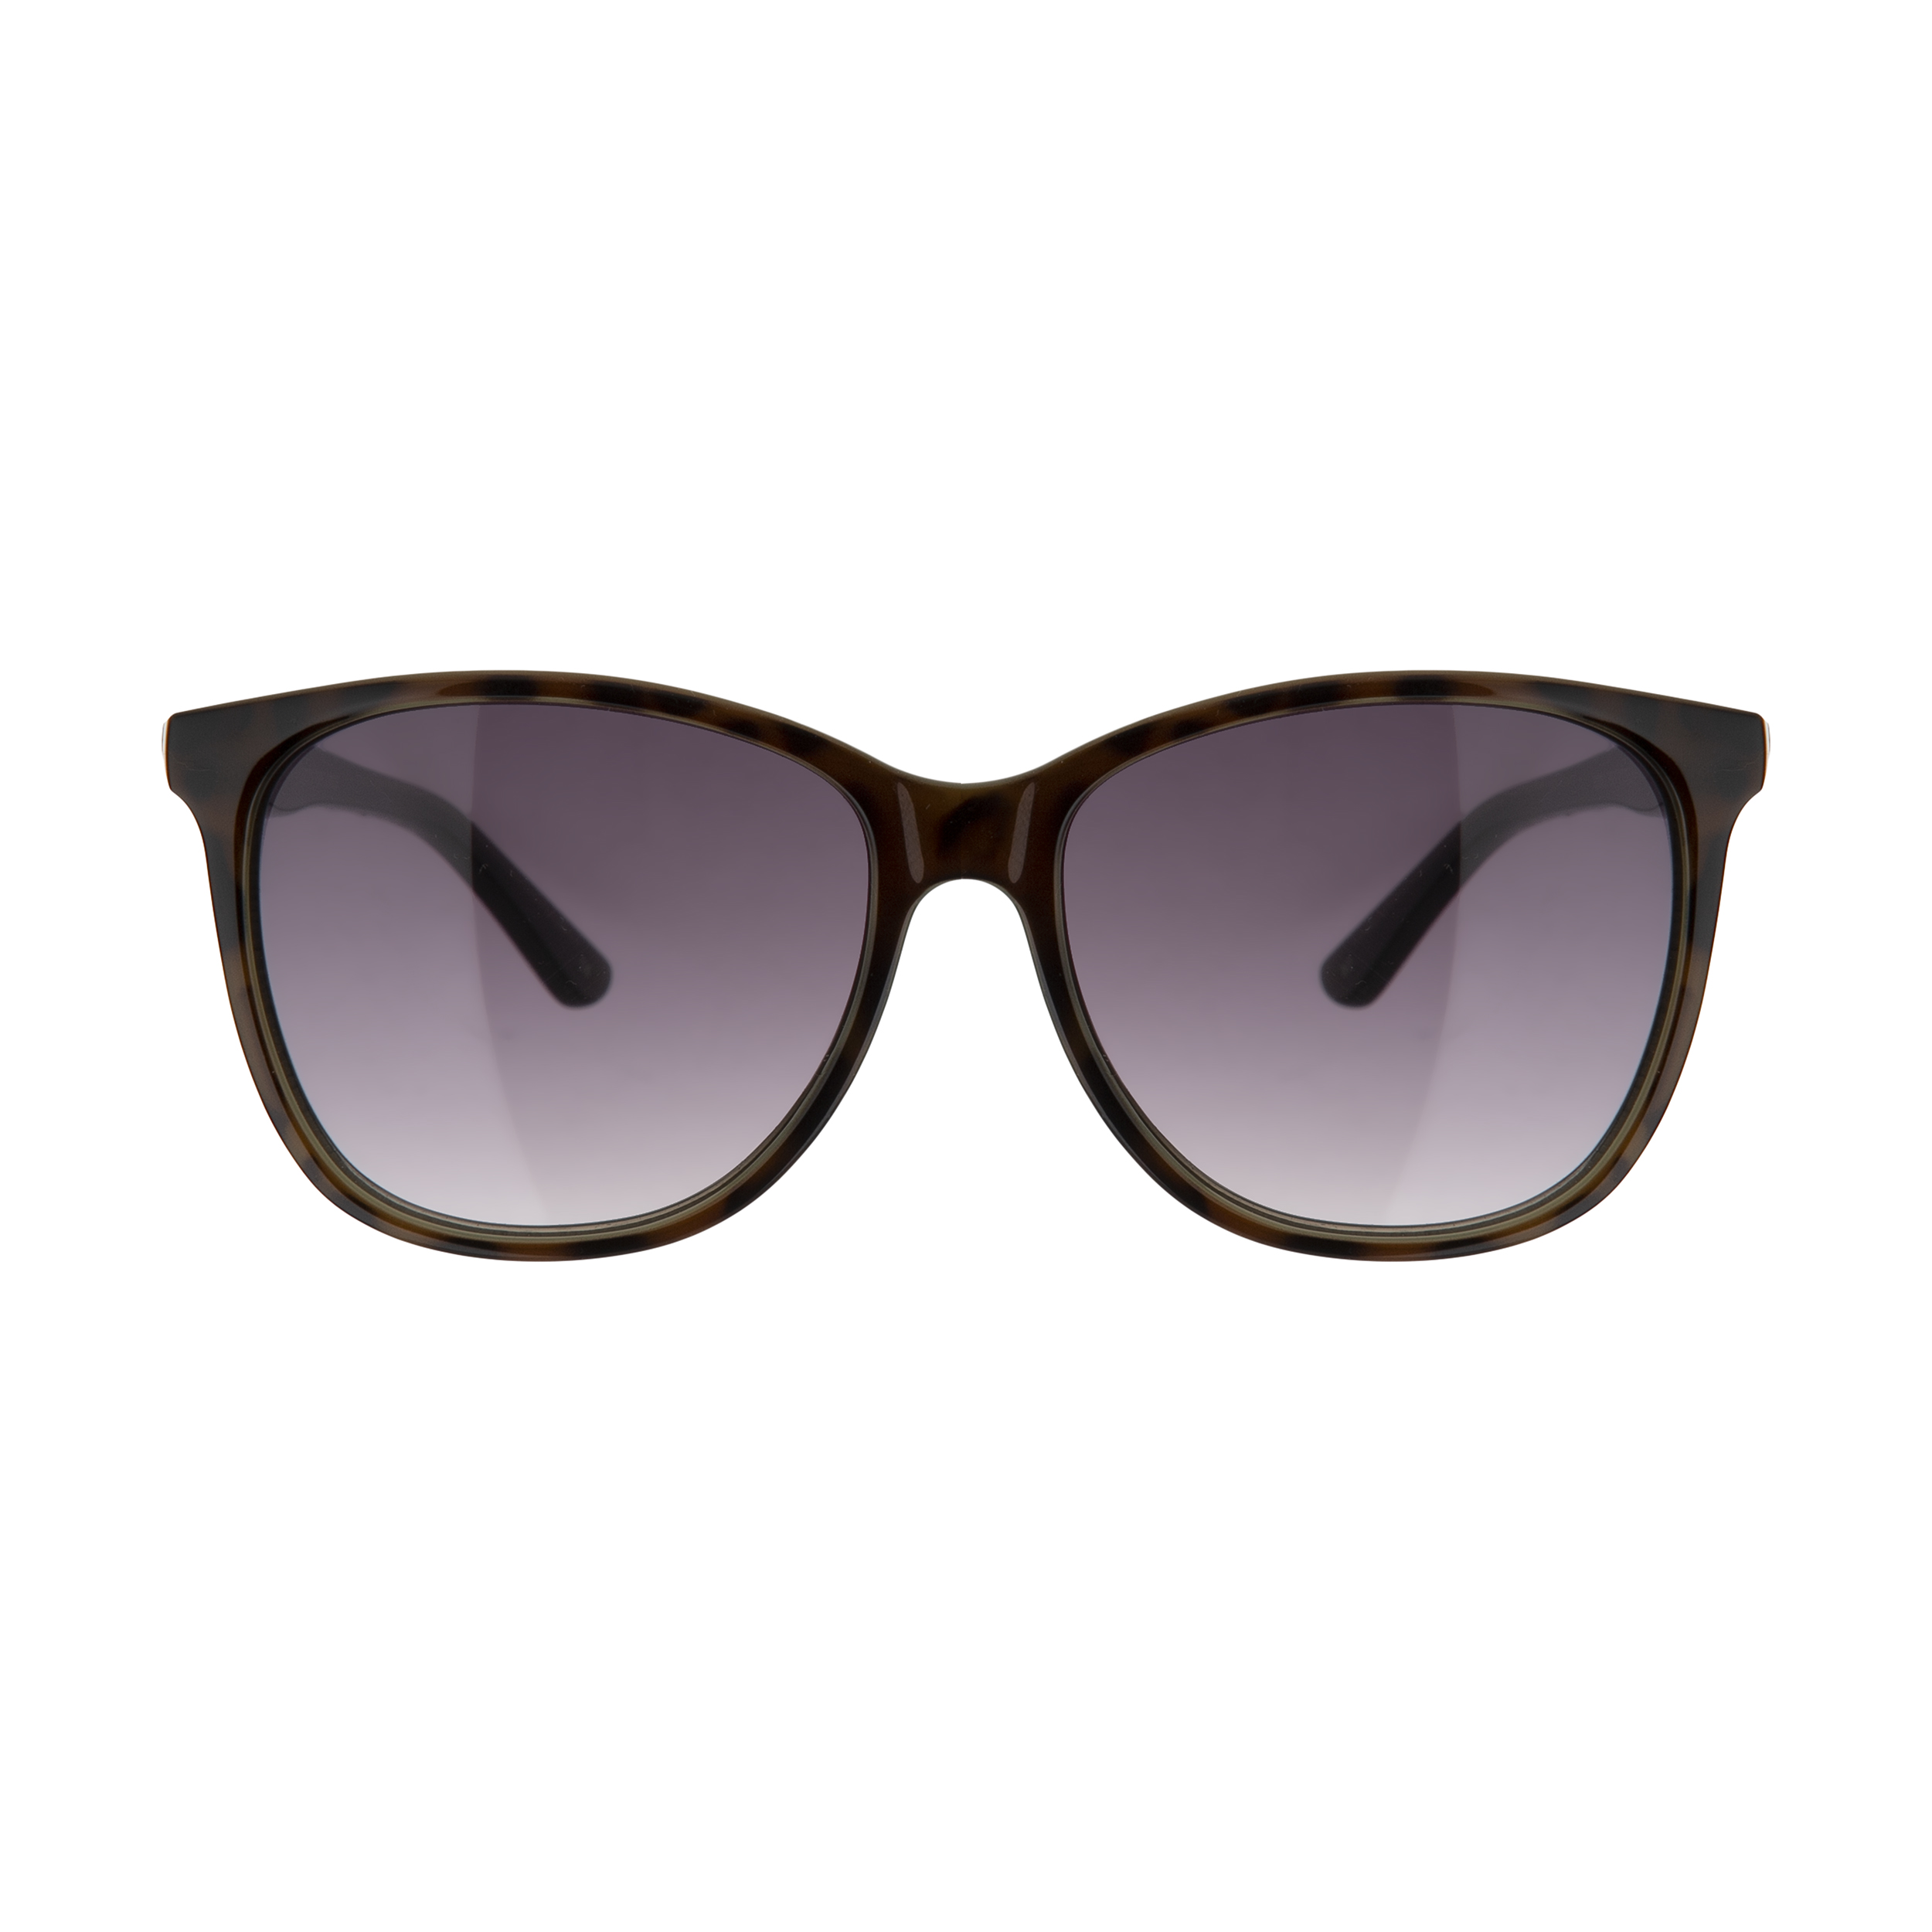 عینک آفتابی زنانه تد بیکر مدل TB 1496 112 Ted Baker Sunglasses For Women 